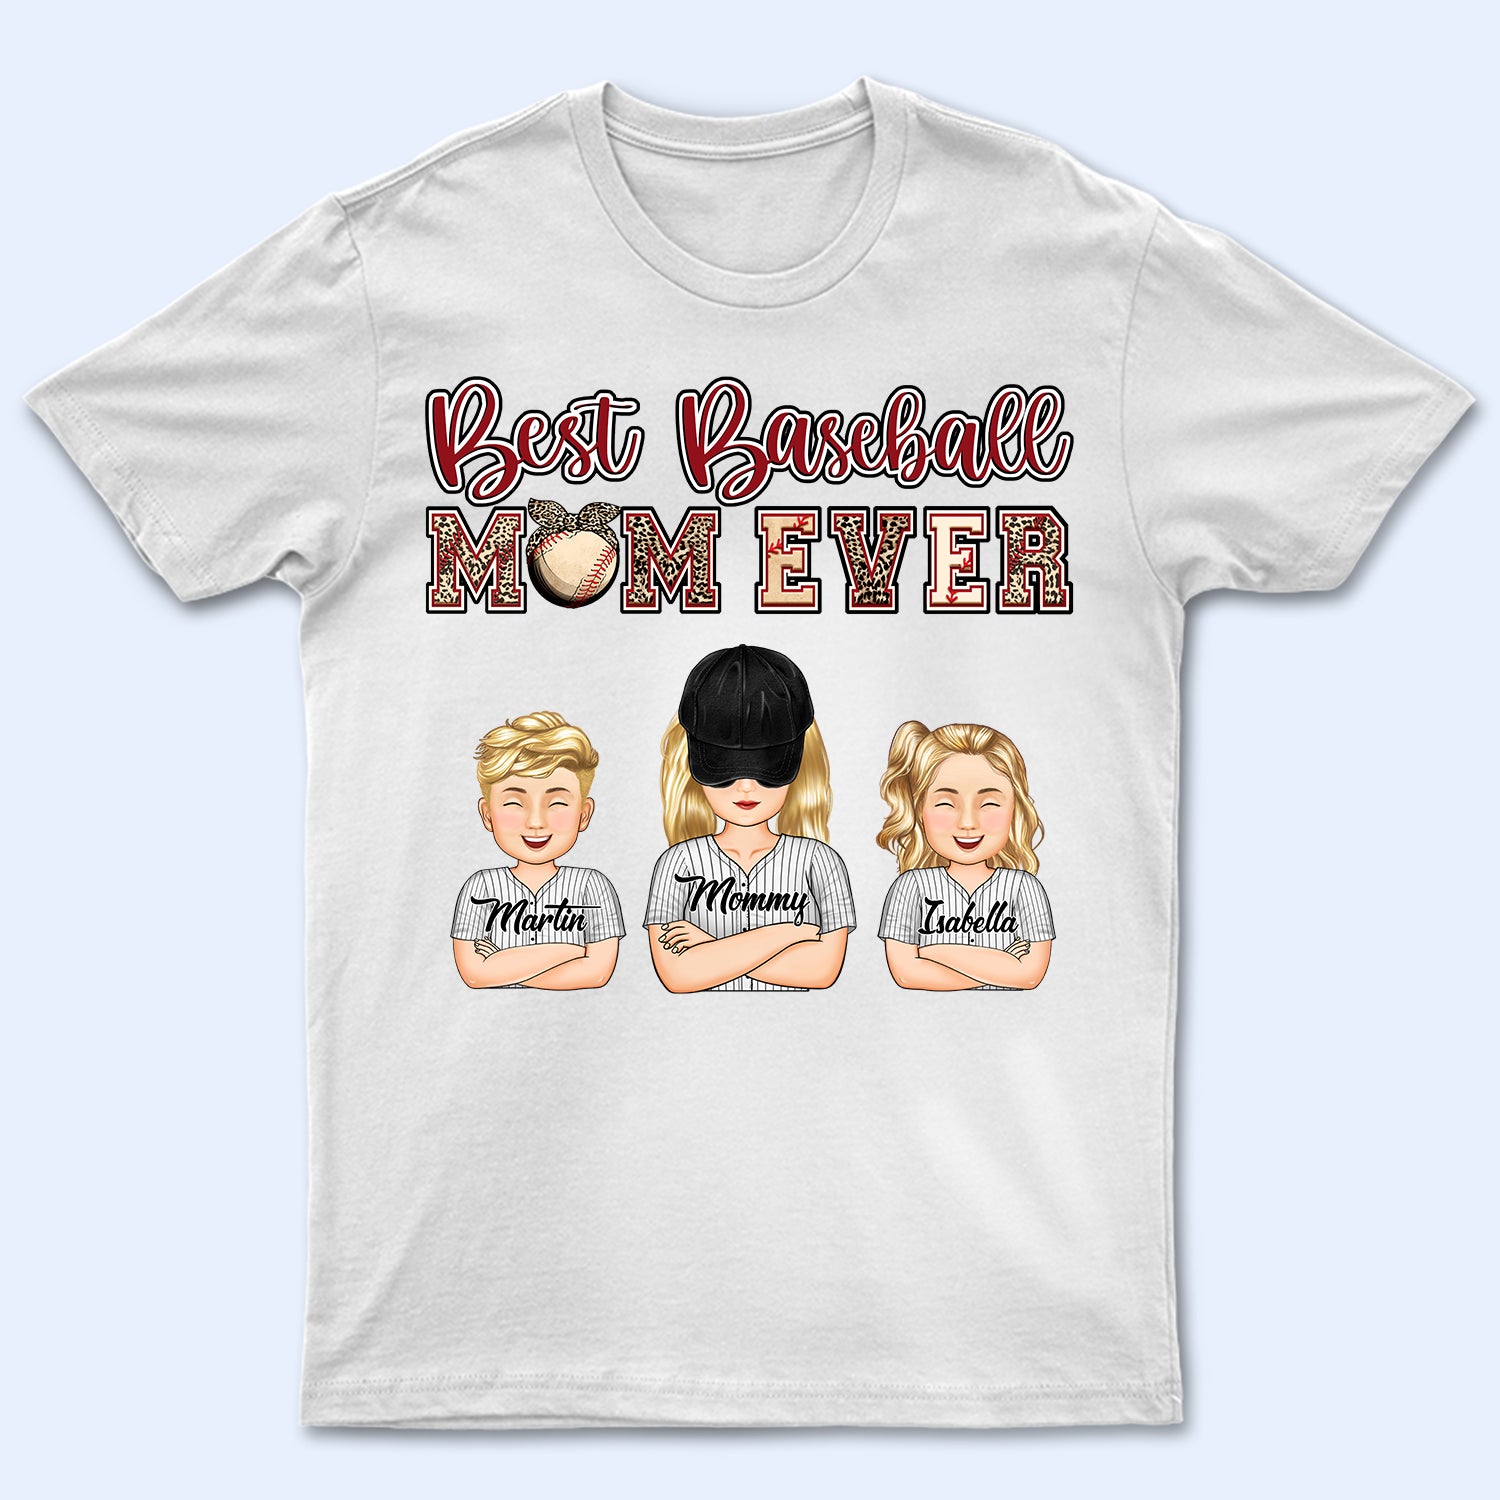 Best Baseball Mom Ever - Birthday, Loving Gift For Baseball Fan, Mom, Mother - Personalized Custom T Shirt